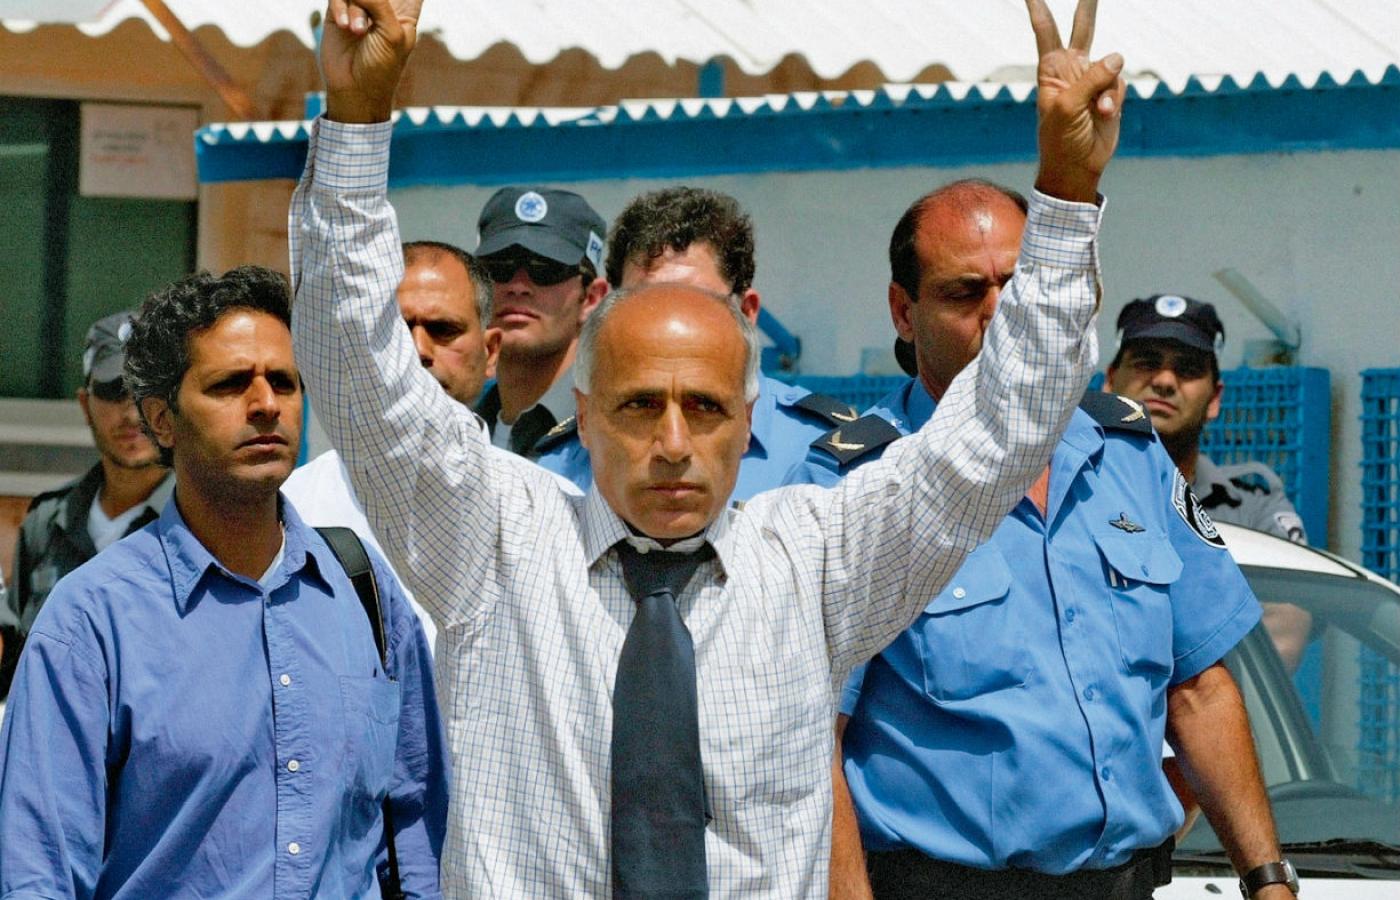 Mordechaj Wanunu. Wyszedł z więzienia, ale nadal podlega ścisłym restrykcjom. Izrael mu łatwo nie wybaczy.